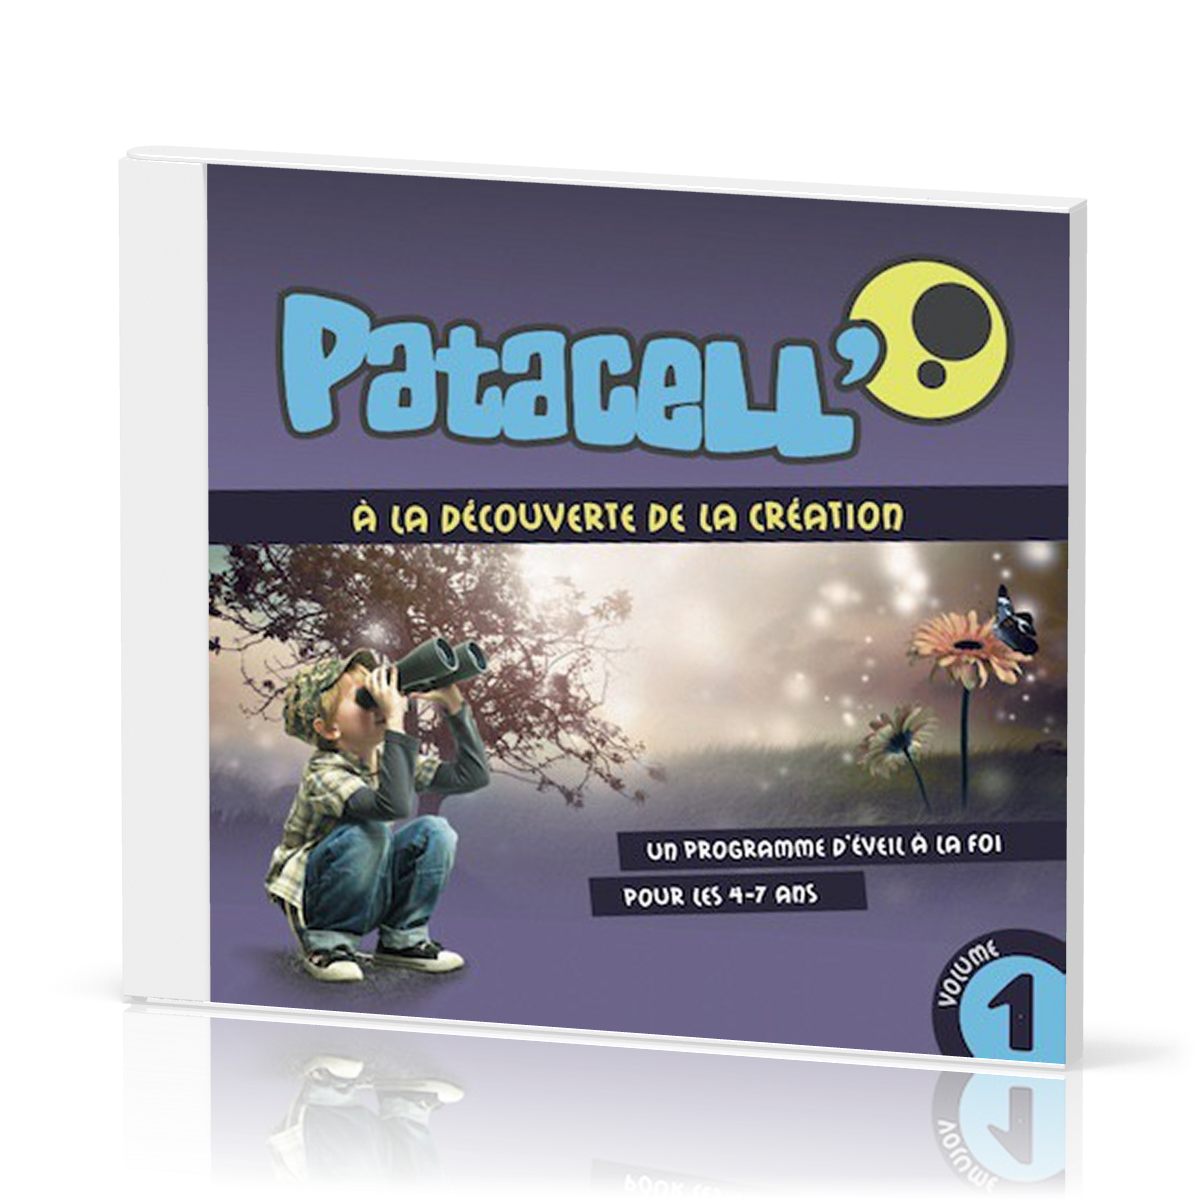 PATACELL VOL. 1 CD - A LA DECOUVERTE DE LA CREATION - CHANSONS D'EVEIL POUR LES 4-7 ANS